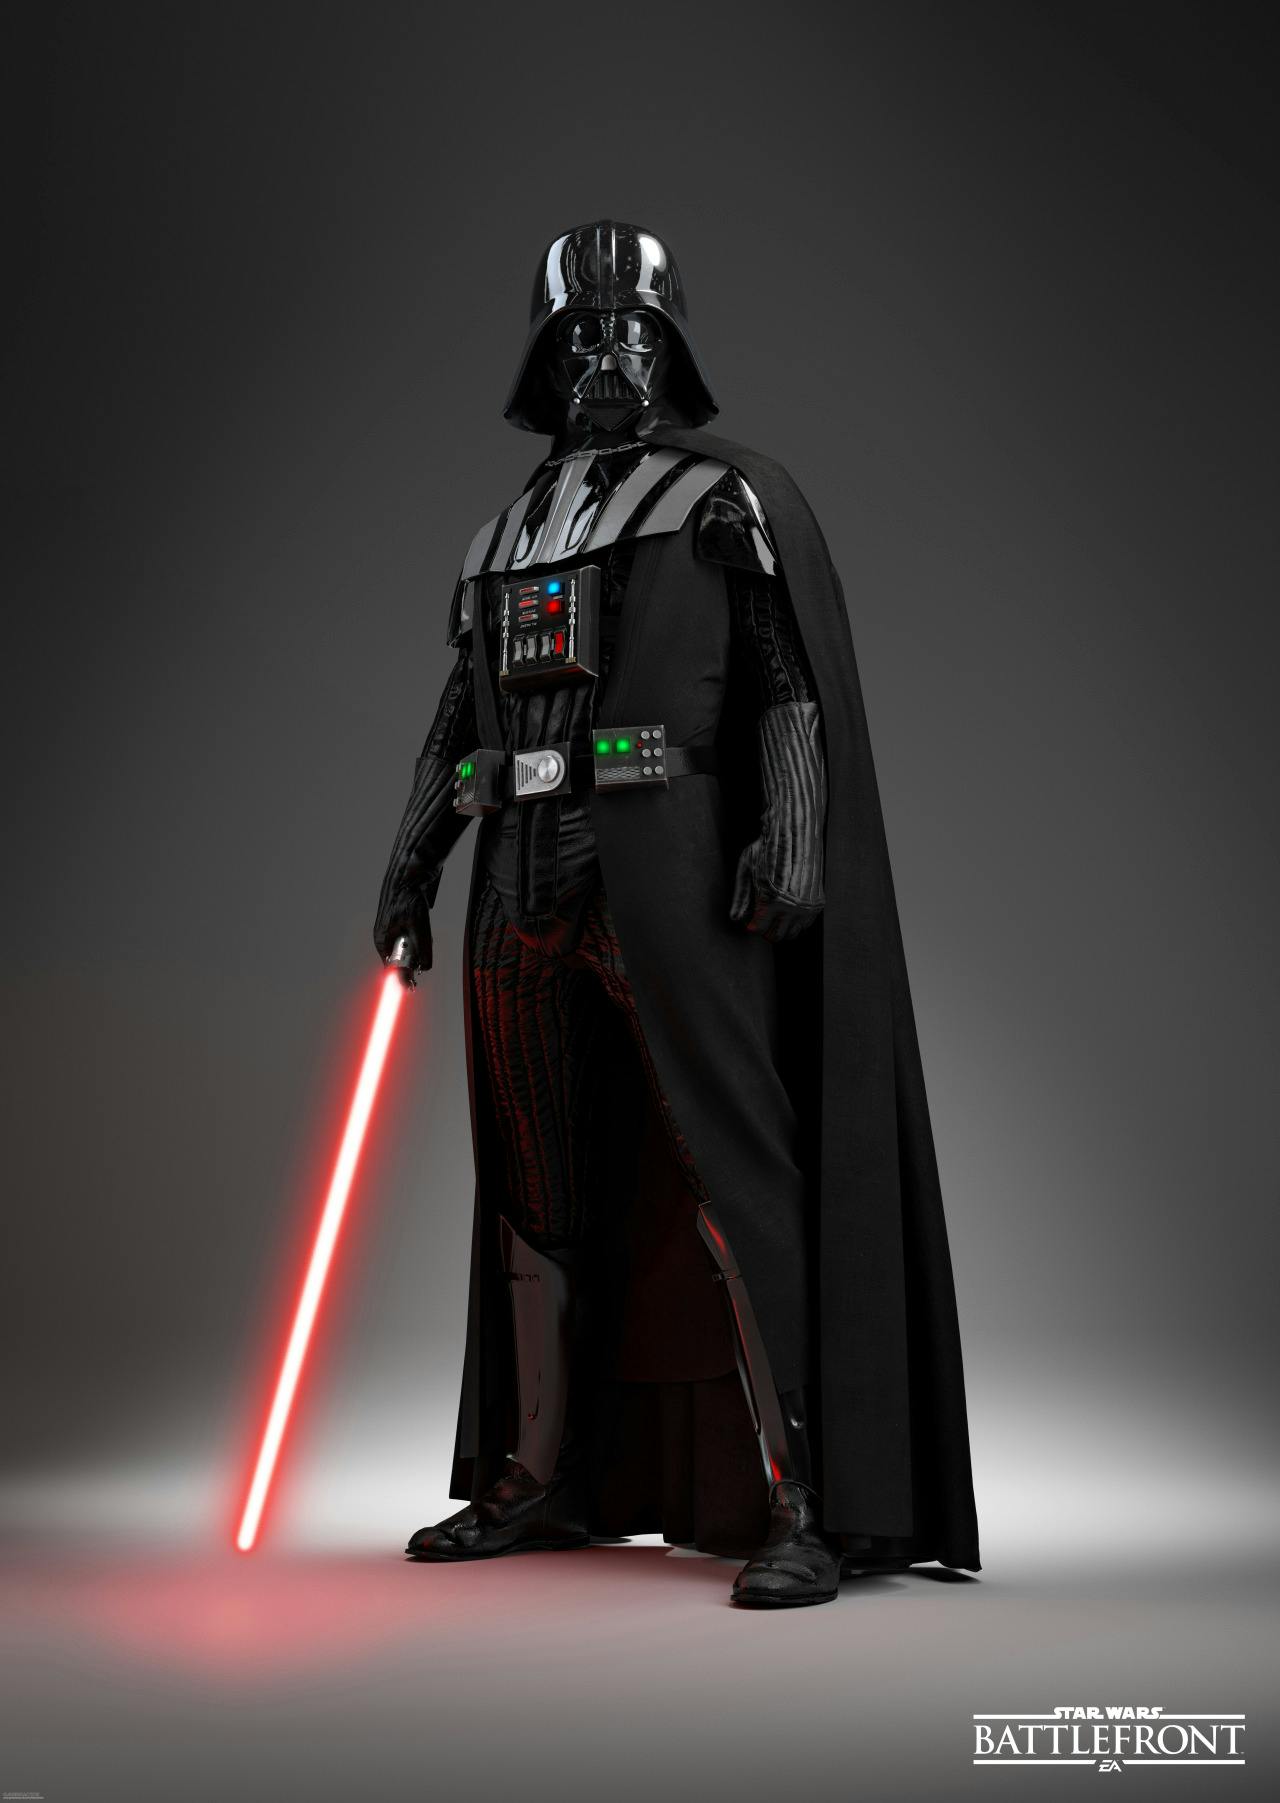 Darth Vader | Star Wars Battlefront Wiki | FANDOM powered ...